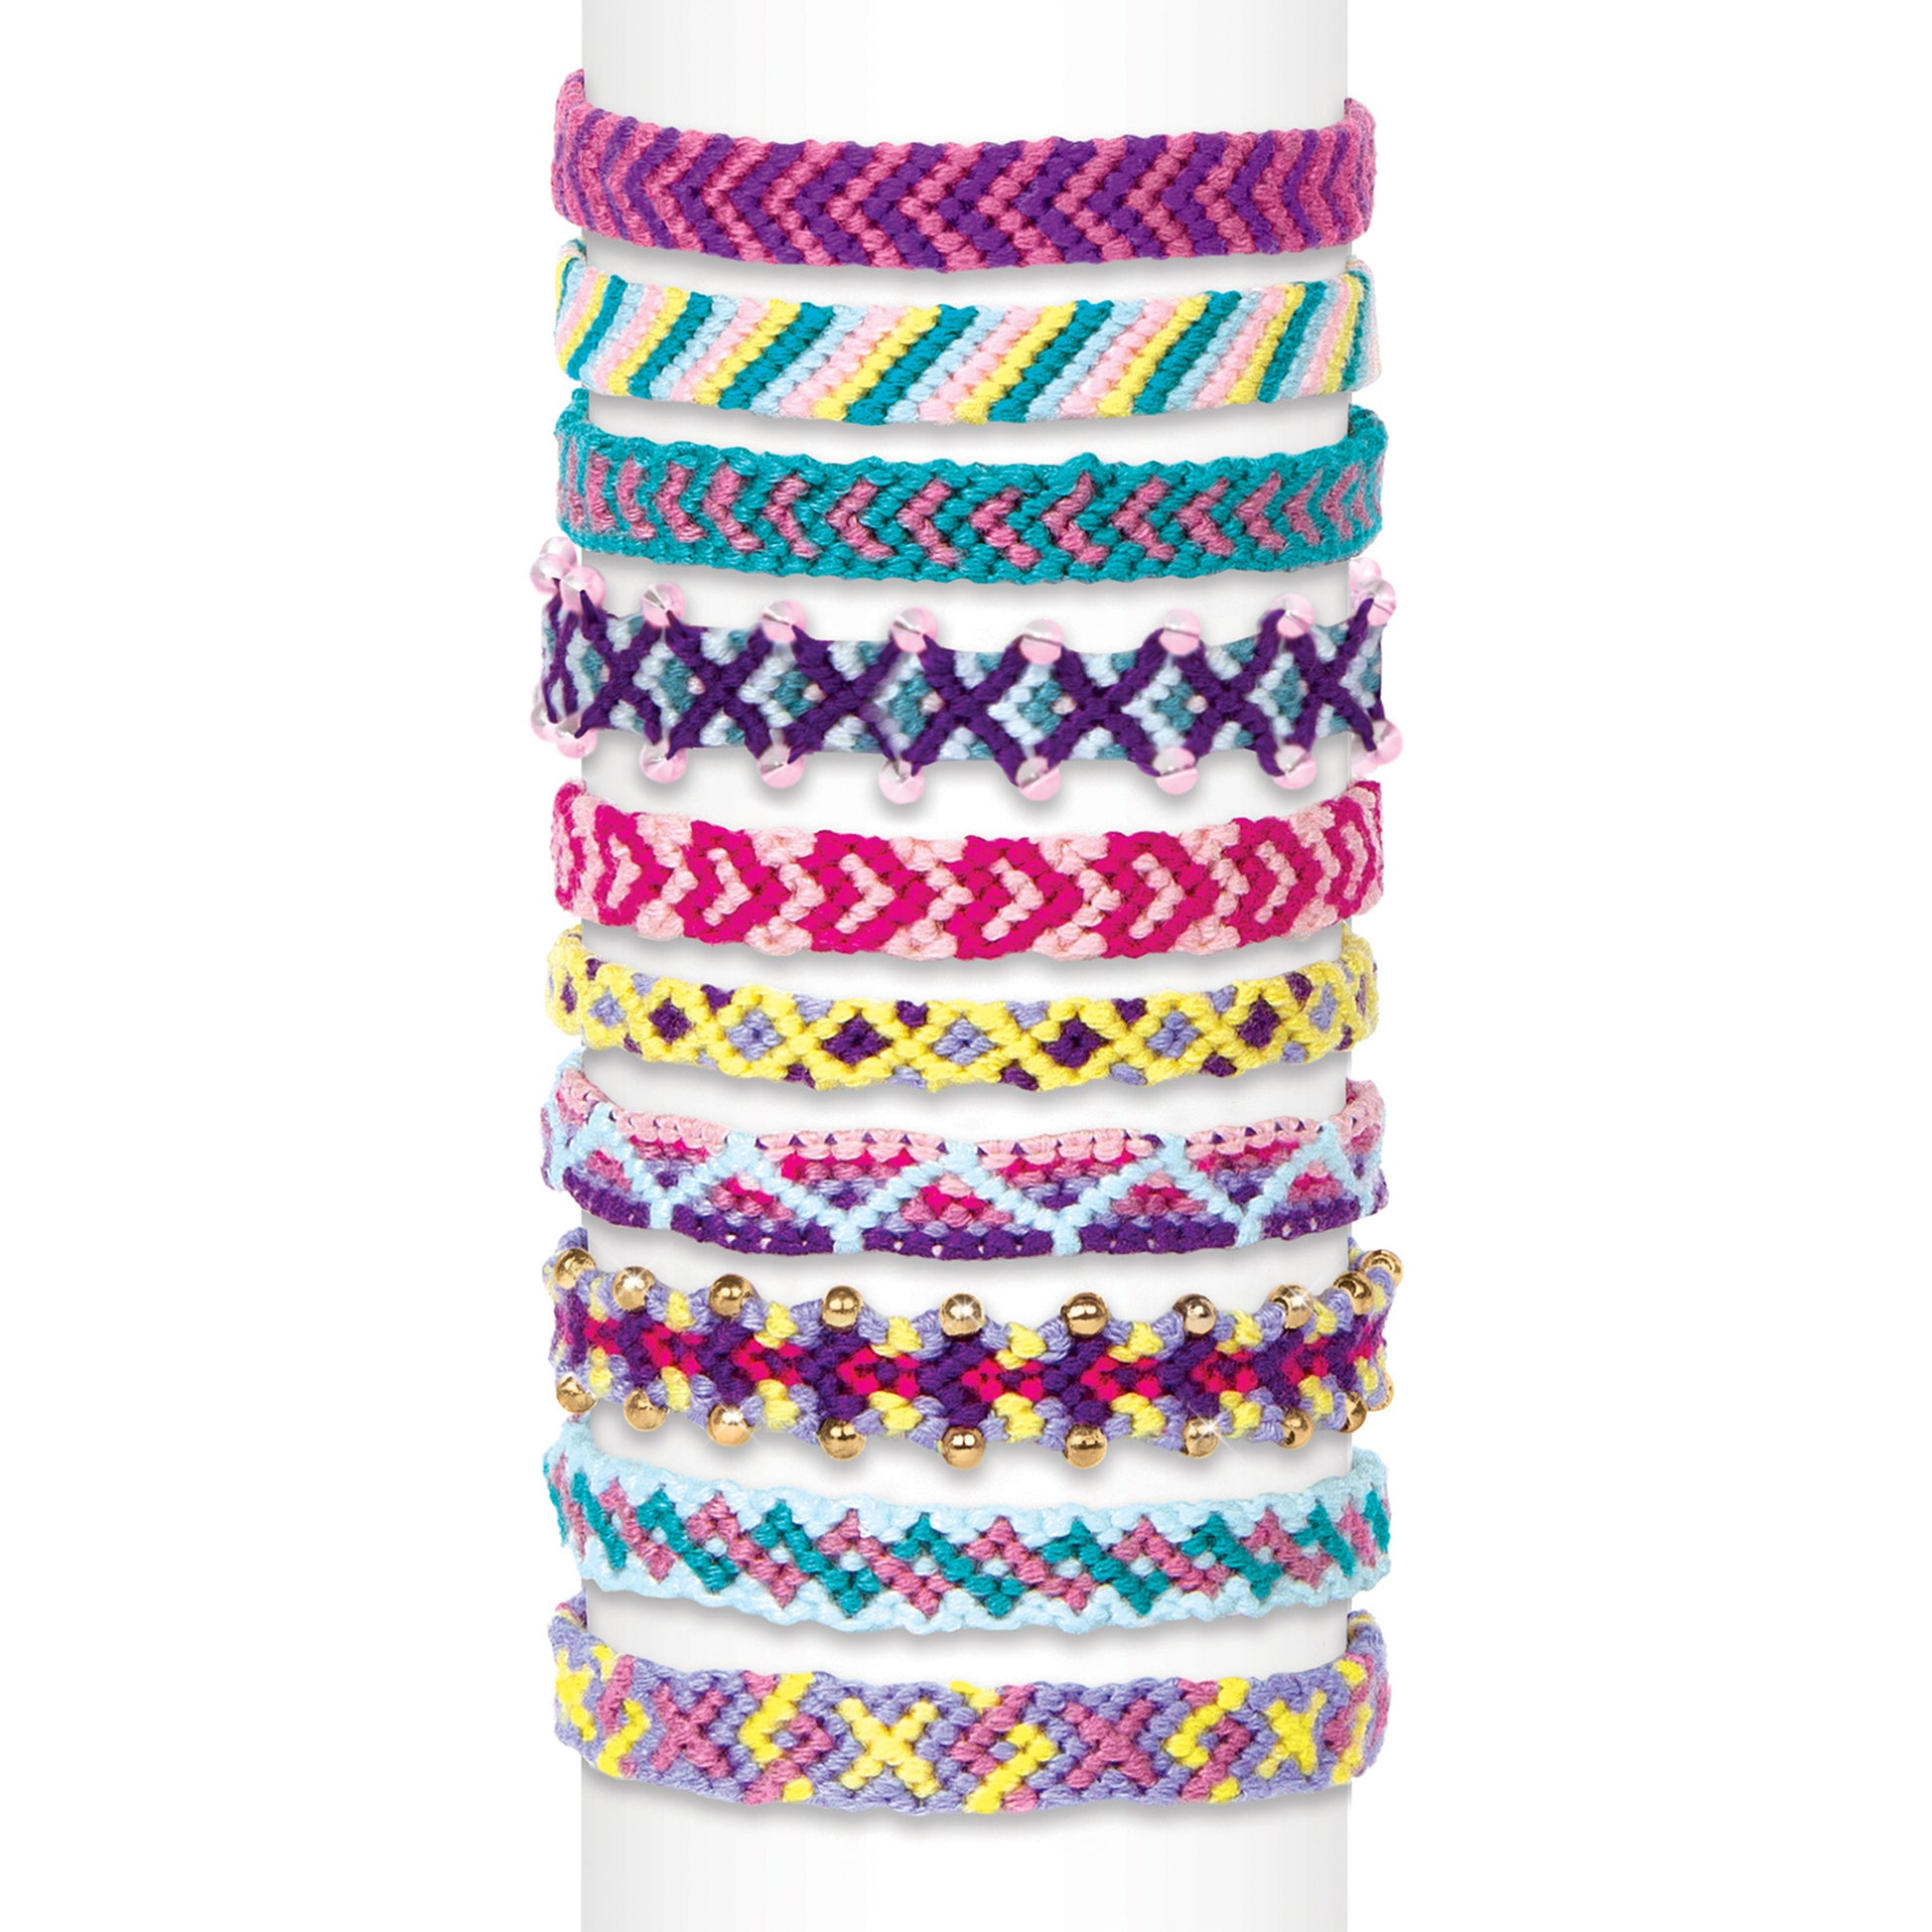 Make It Real - Macrame Friendship Bracelet Making Kit for Girls - Kids  String Bracelet Making Kit - Friendship Bracelet Craft Kit w/Thread, Beads  